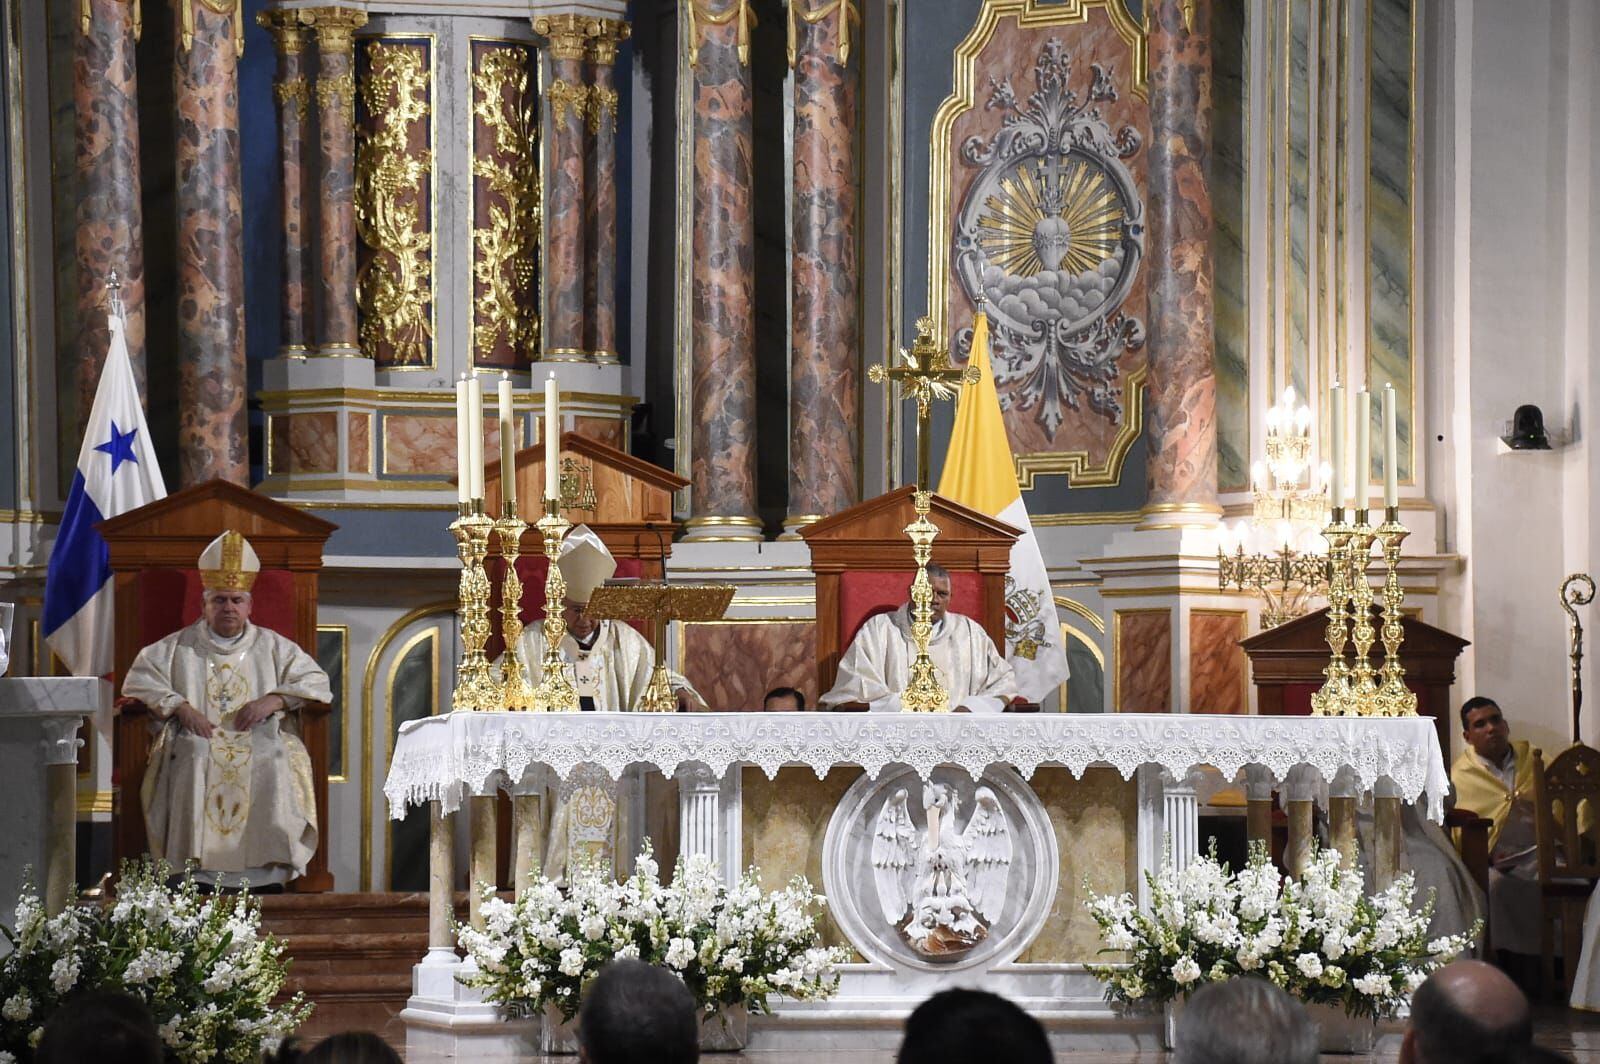 Este sábado 4 de mayo, un día antes de los comicios generales, se llevó a cabo una misa en la Catedral Basílica Santa María la Antigua. LP Elysée Fernández